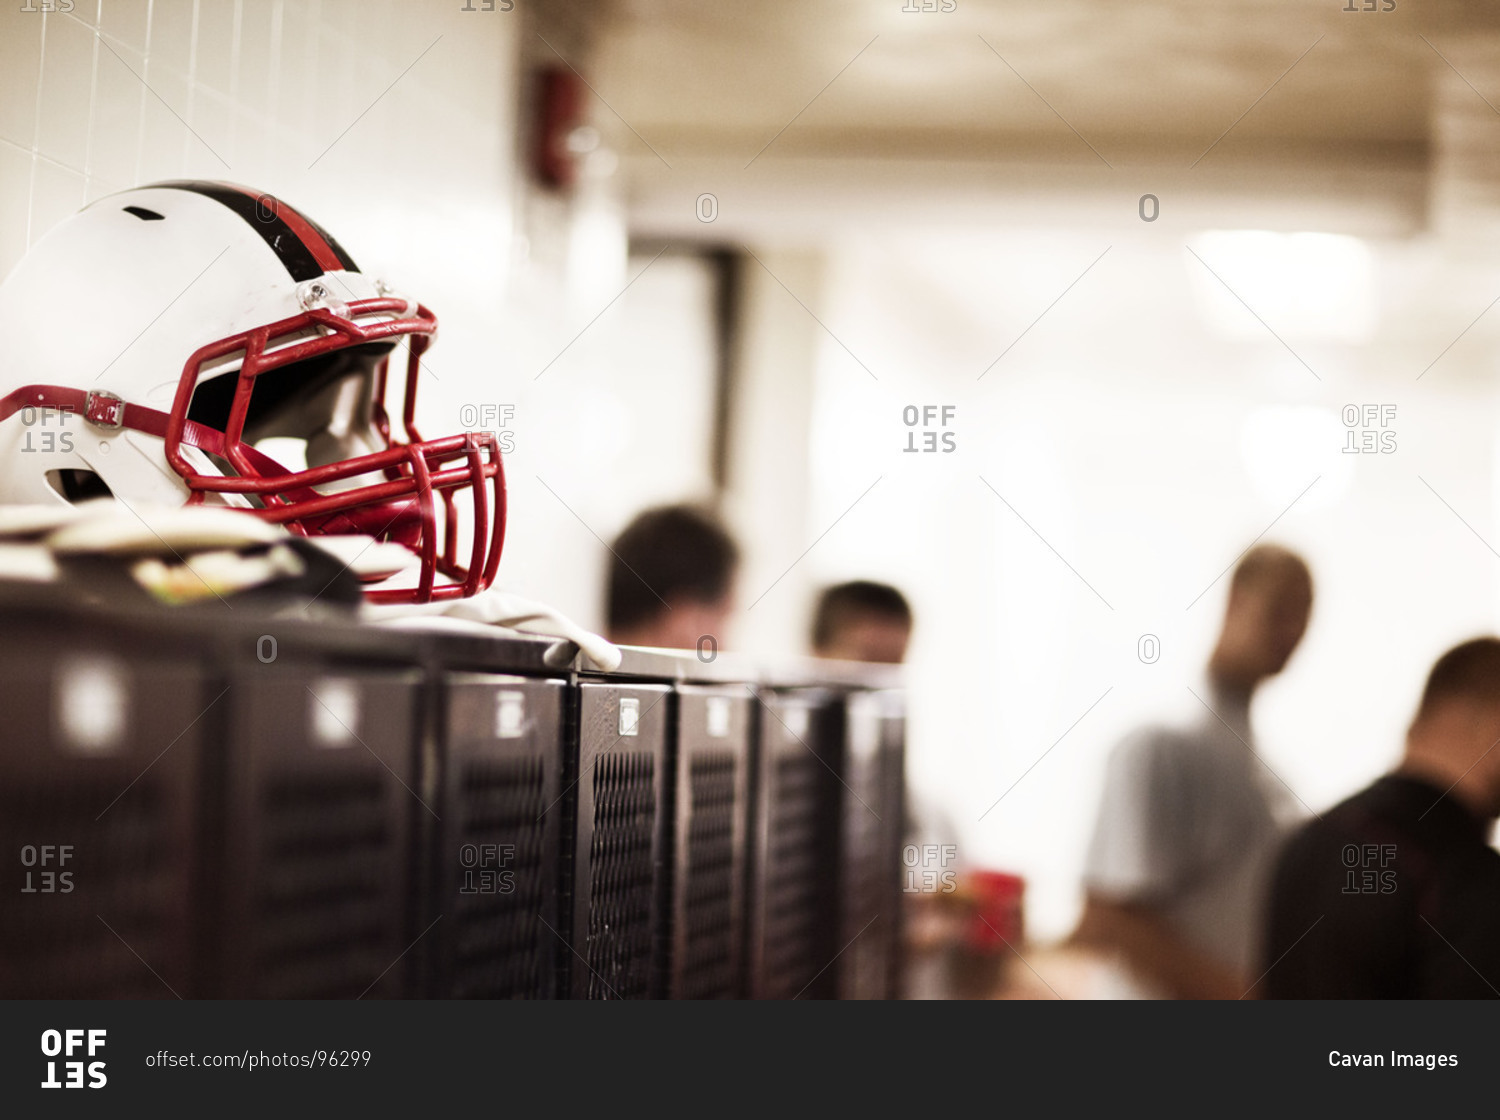 Football helmet in a locker room